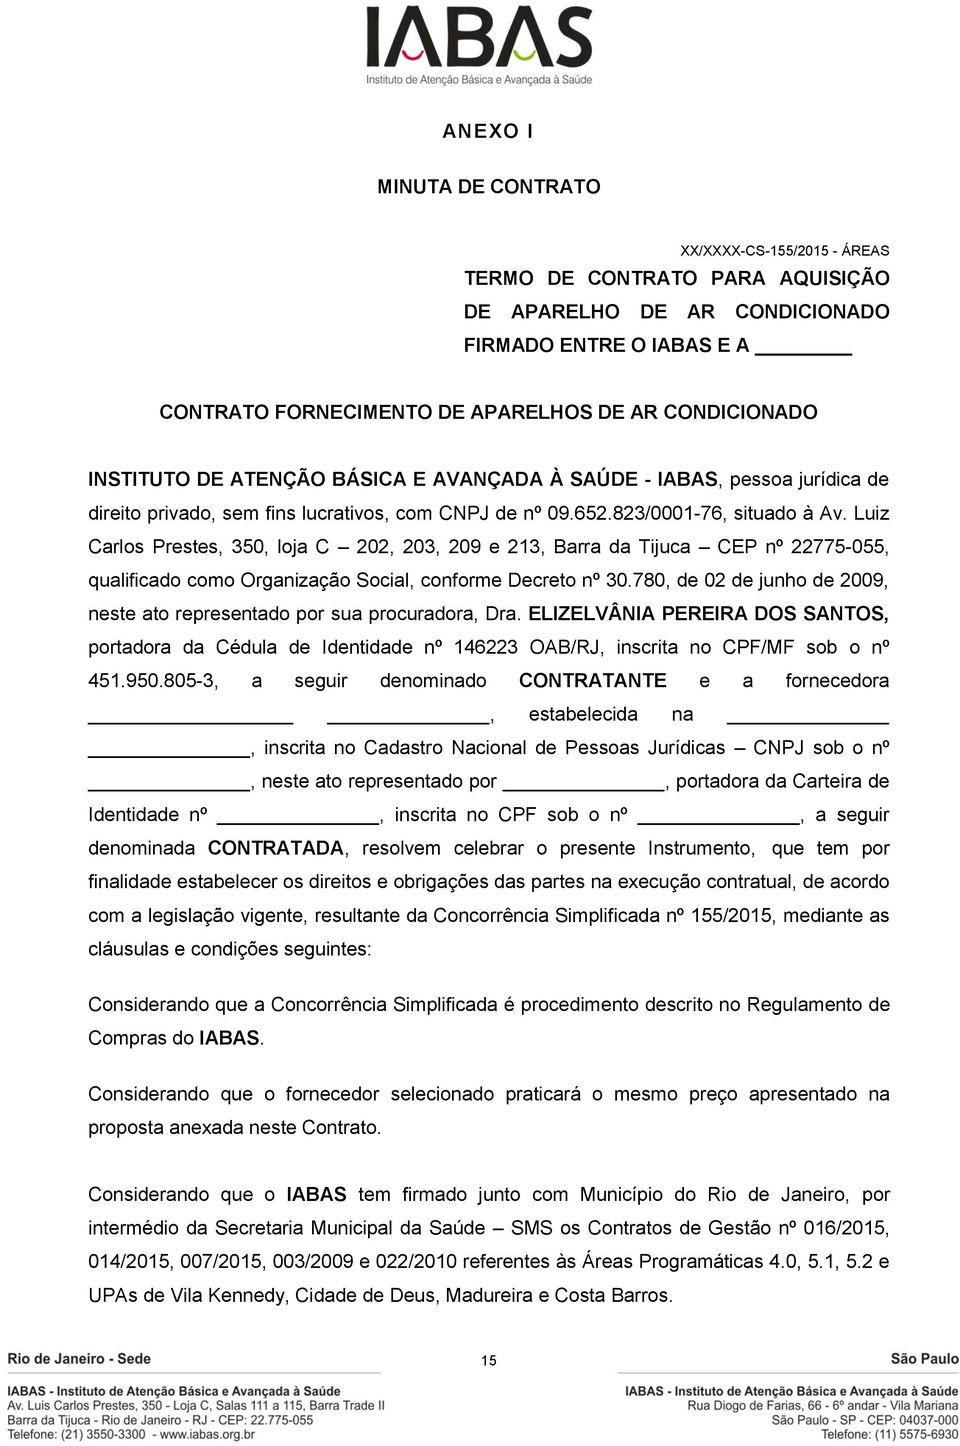 Luiz Carlos Prestes, 350, loja C 202, 203, 209 e 213, Barra da Tijuca CEP nº 22775-055, qualificado como Organização Social, conforme Decreto nº 30.